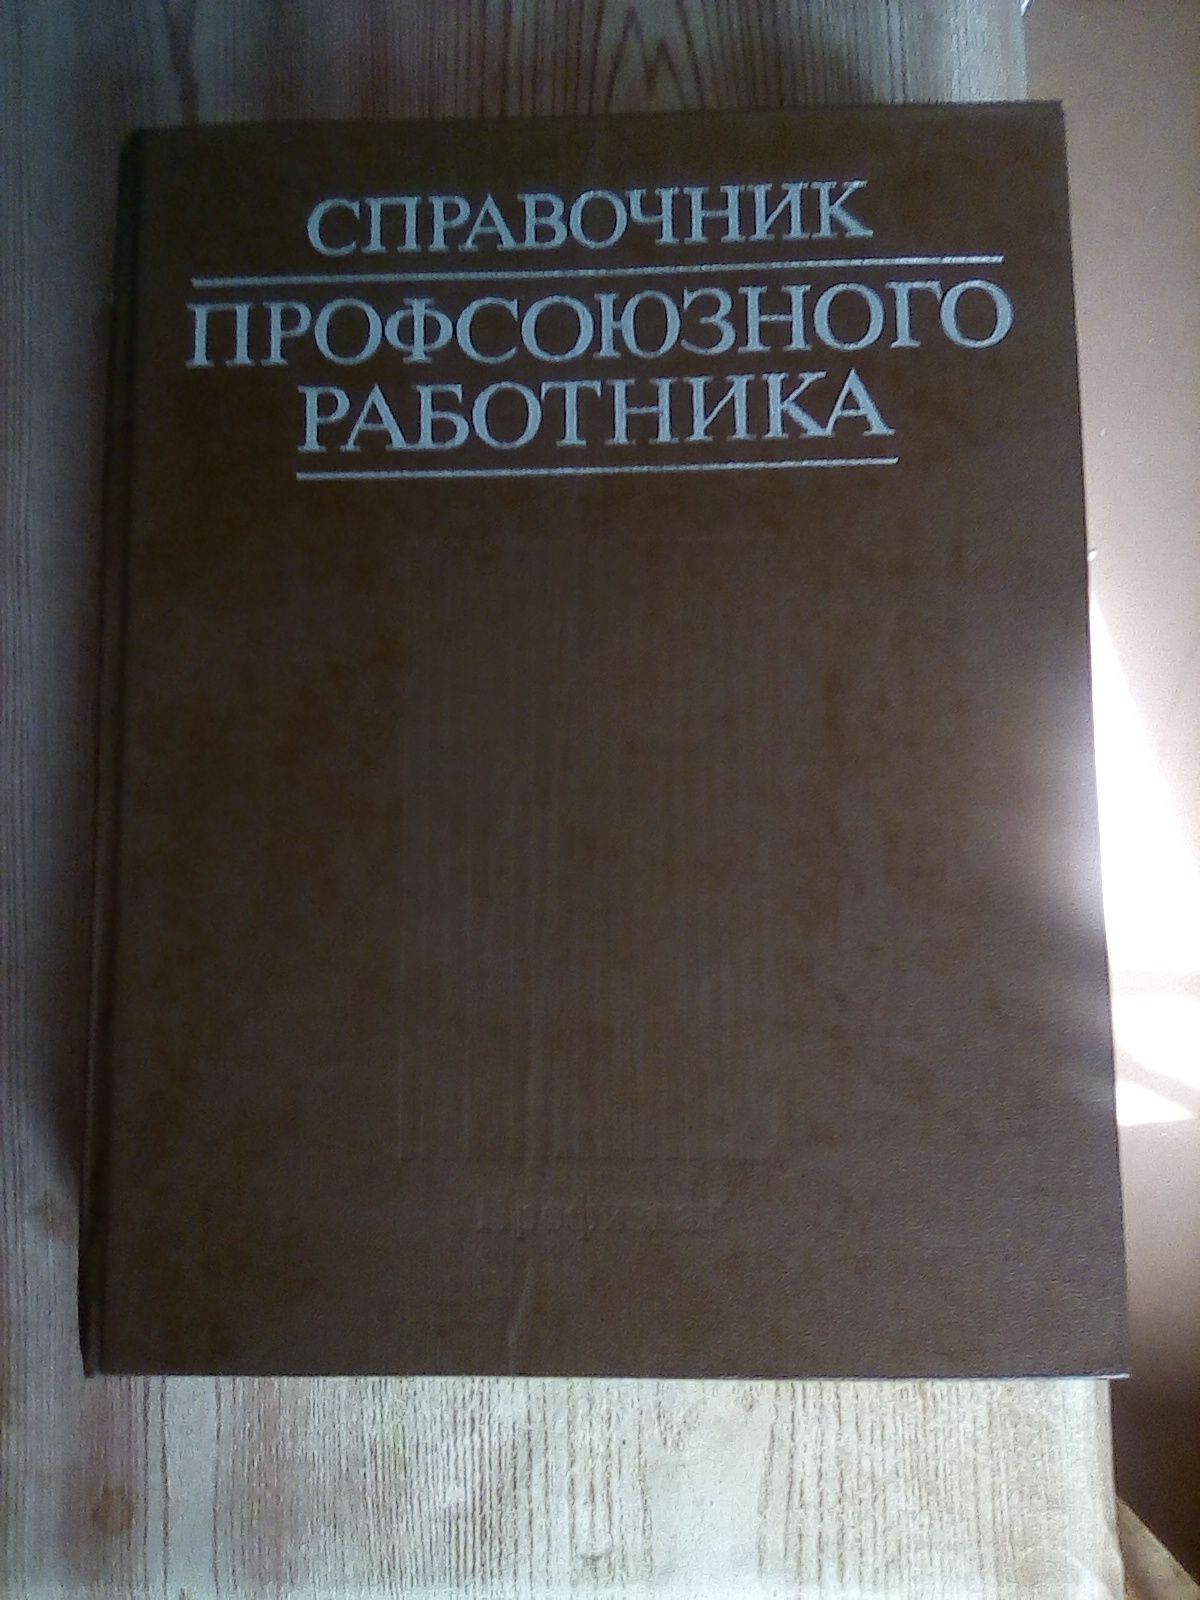 Справочник профсоюзного работника 1987 года. 640 стр.